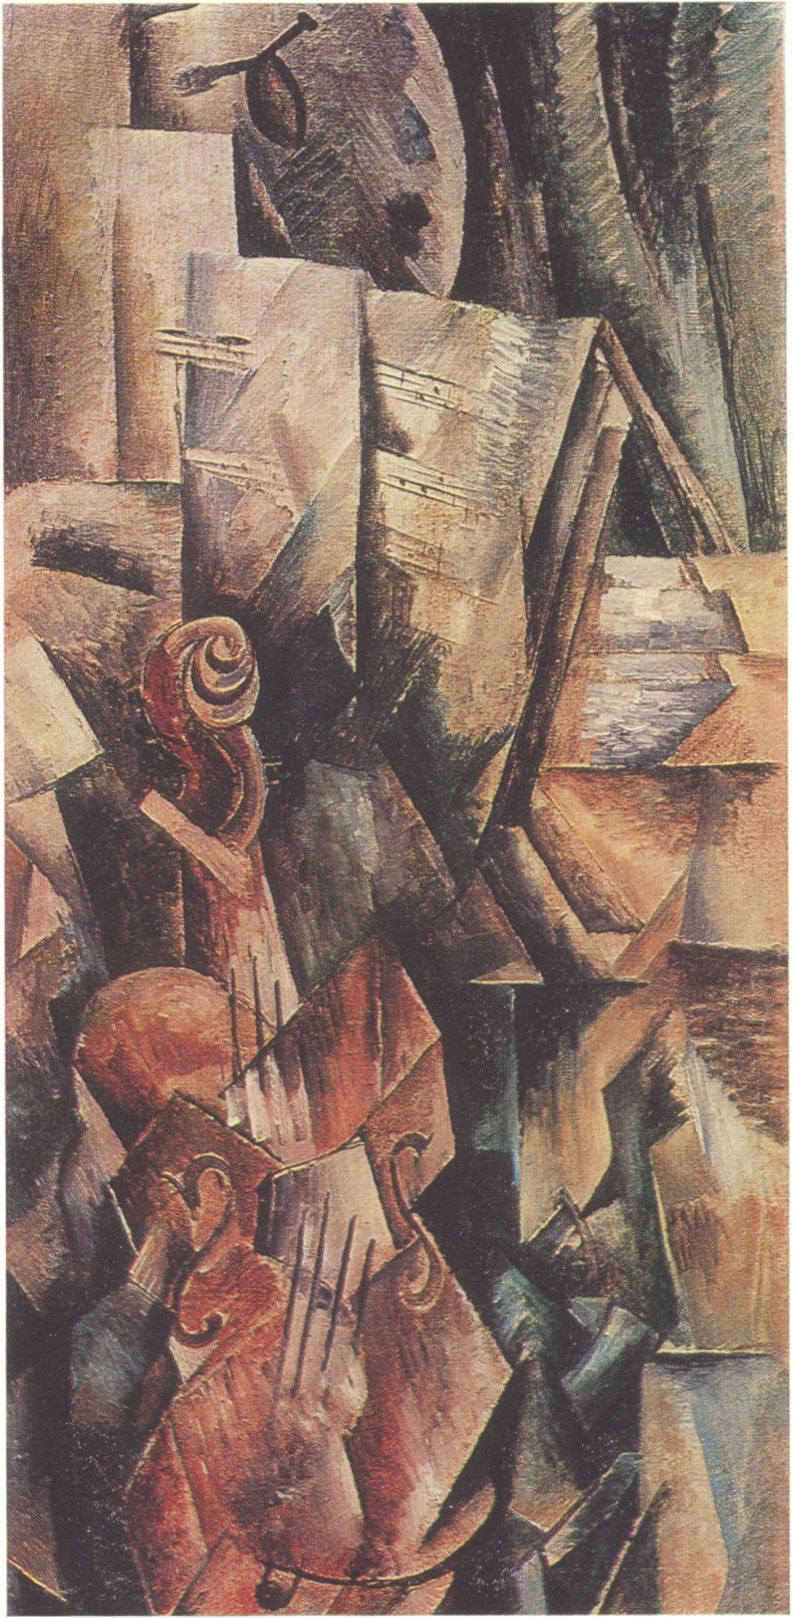 3. Жорж Брак. Скрипка и палитра. 1910